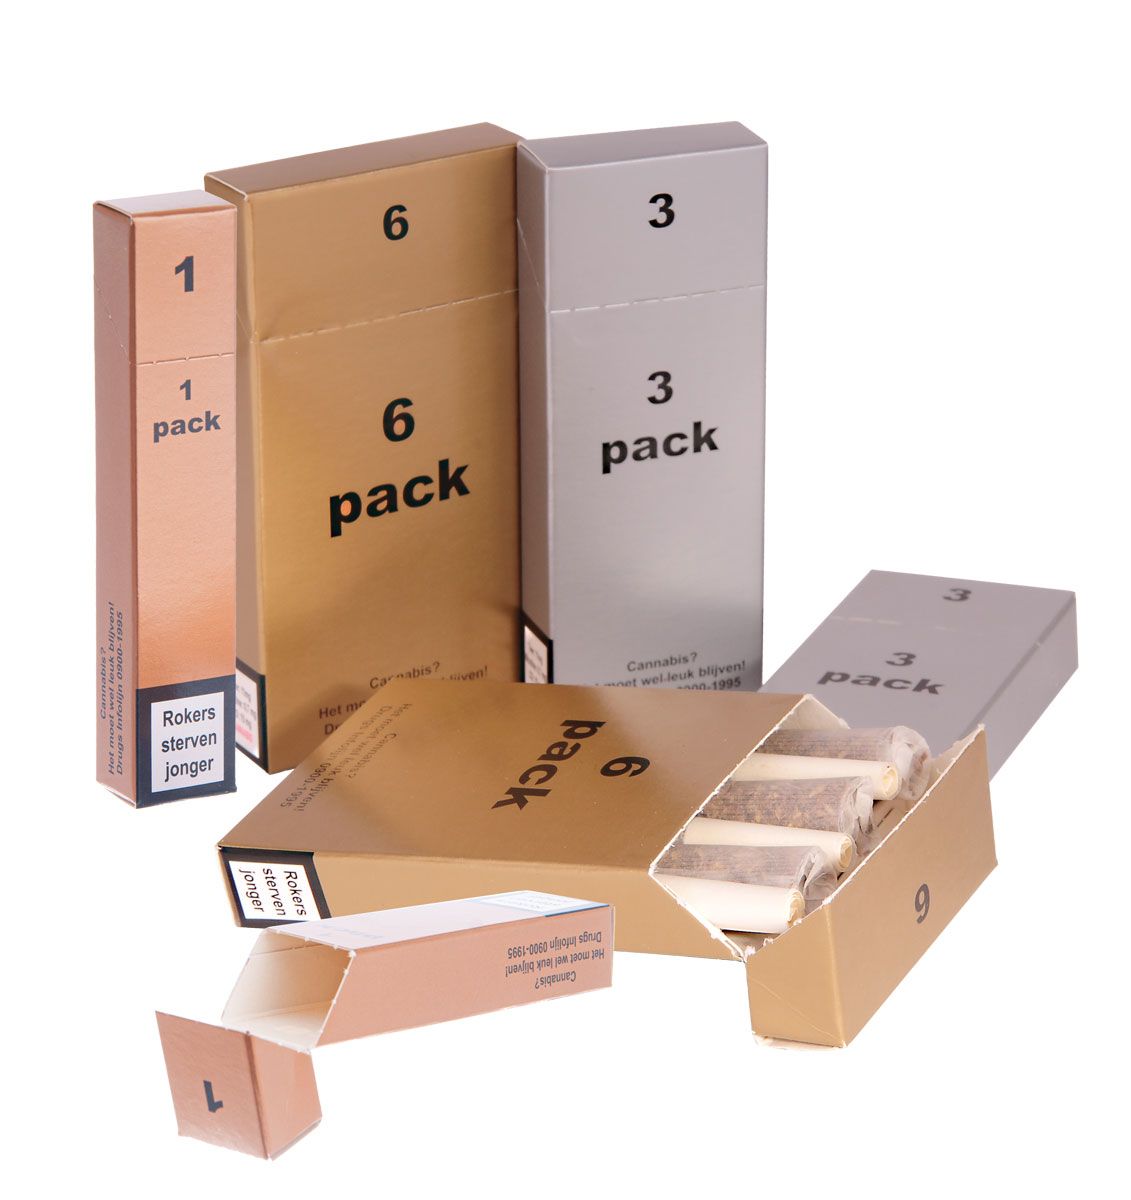 Sample Set Joint-Packs